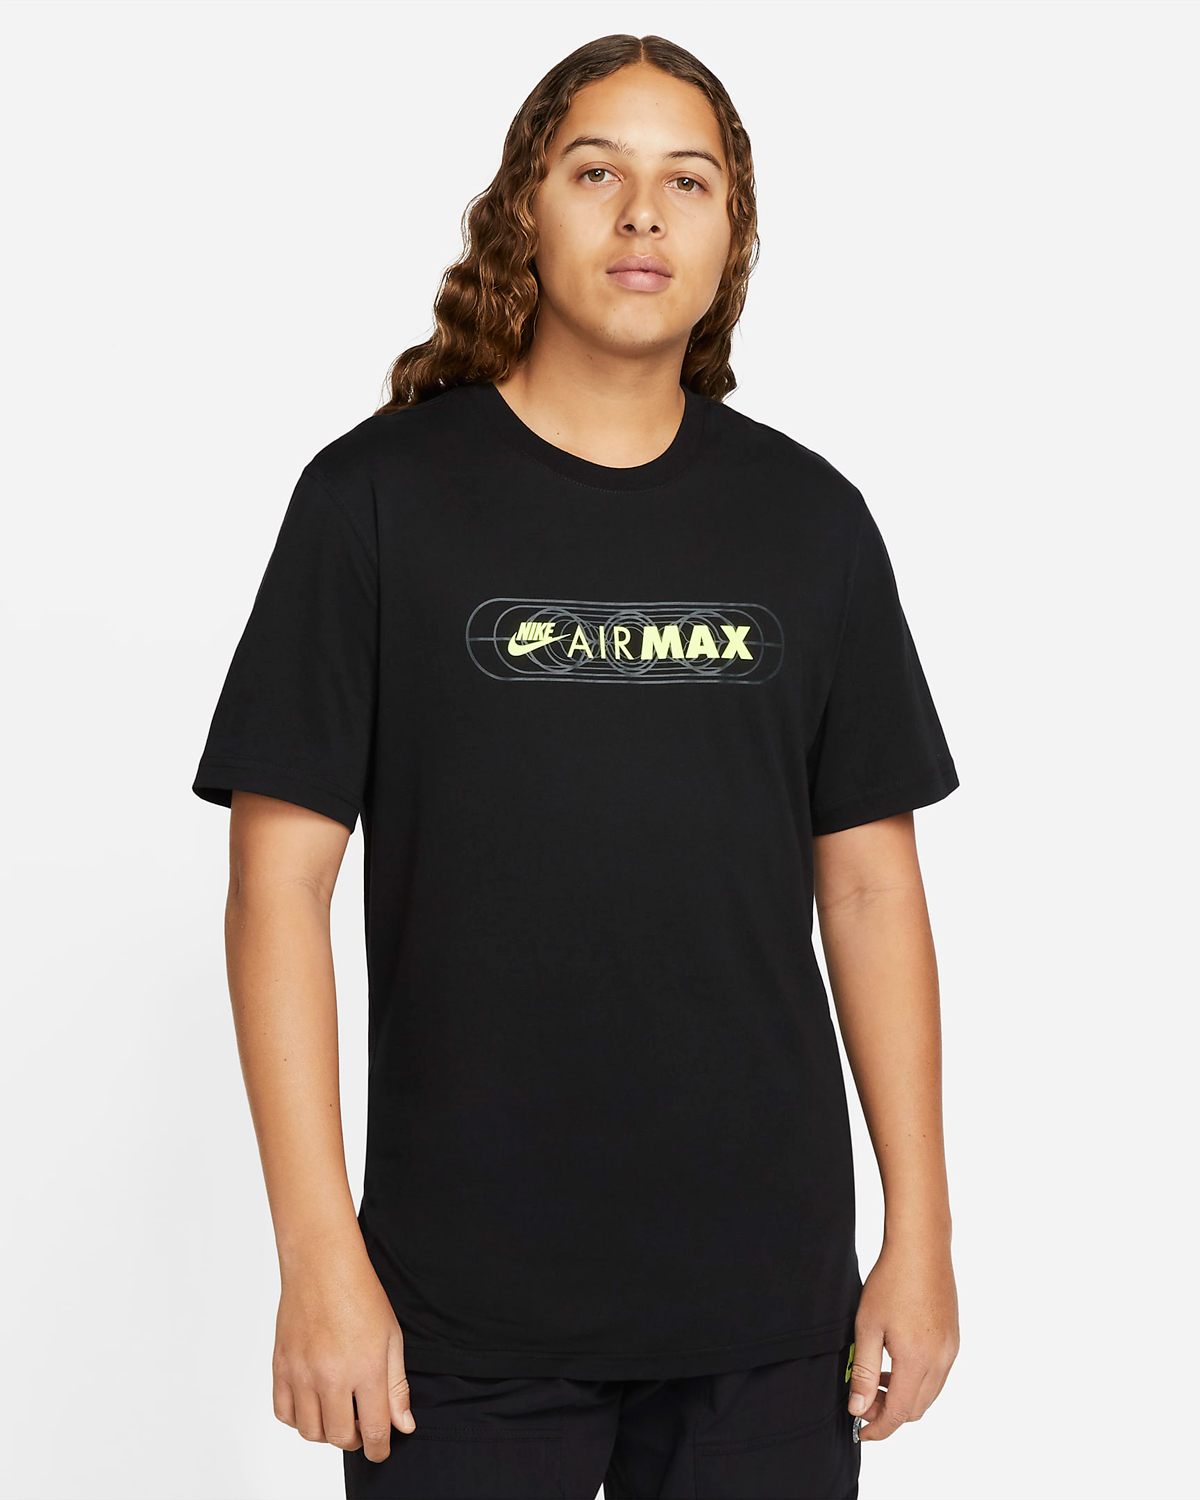 Nike-Air-Max-T-Shirt-Black-Volt